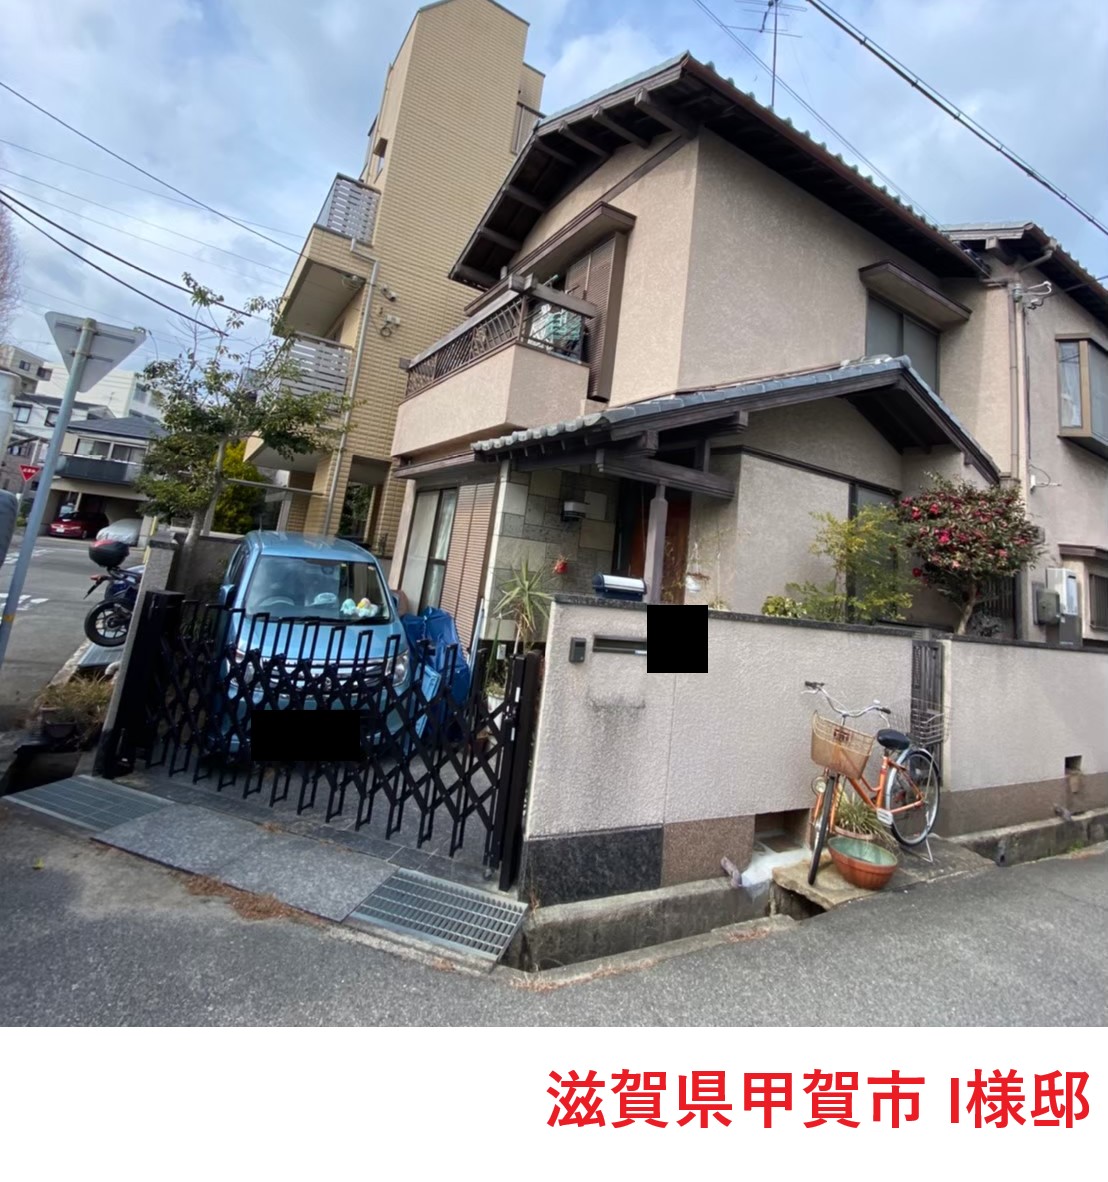 滋賀県甲賀市甲賀町希望が丘で外壁塗装と瓦屋根修理を検討しお問い合わせ